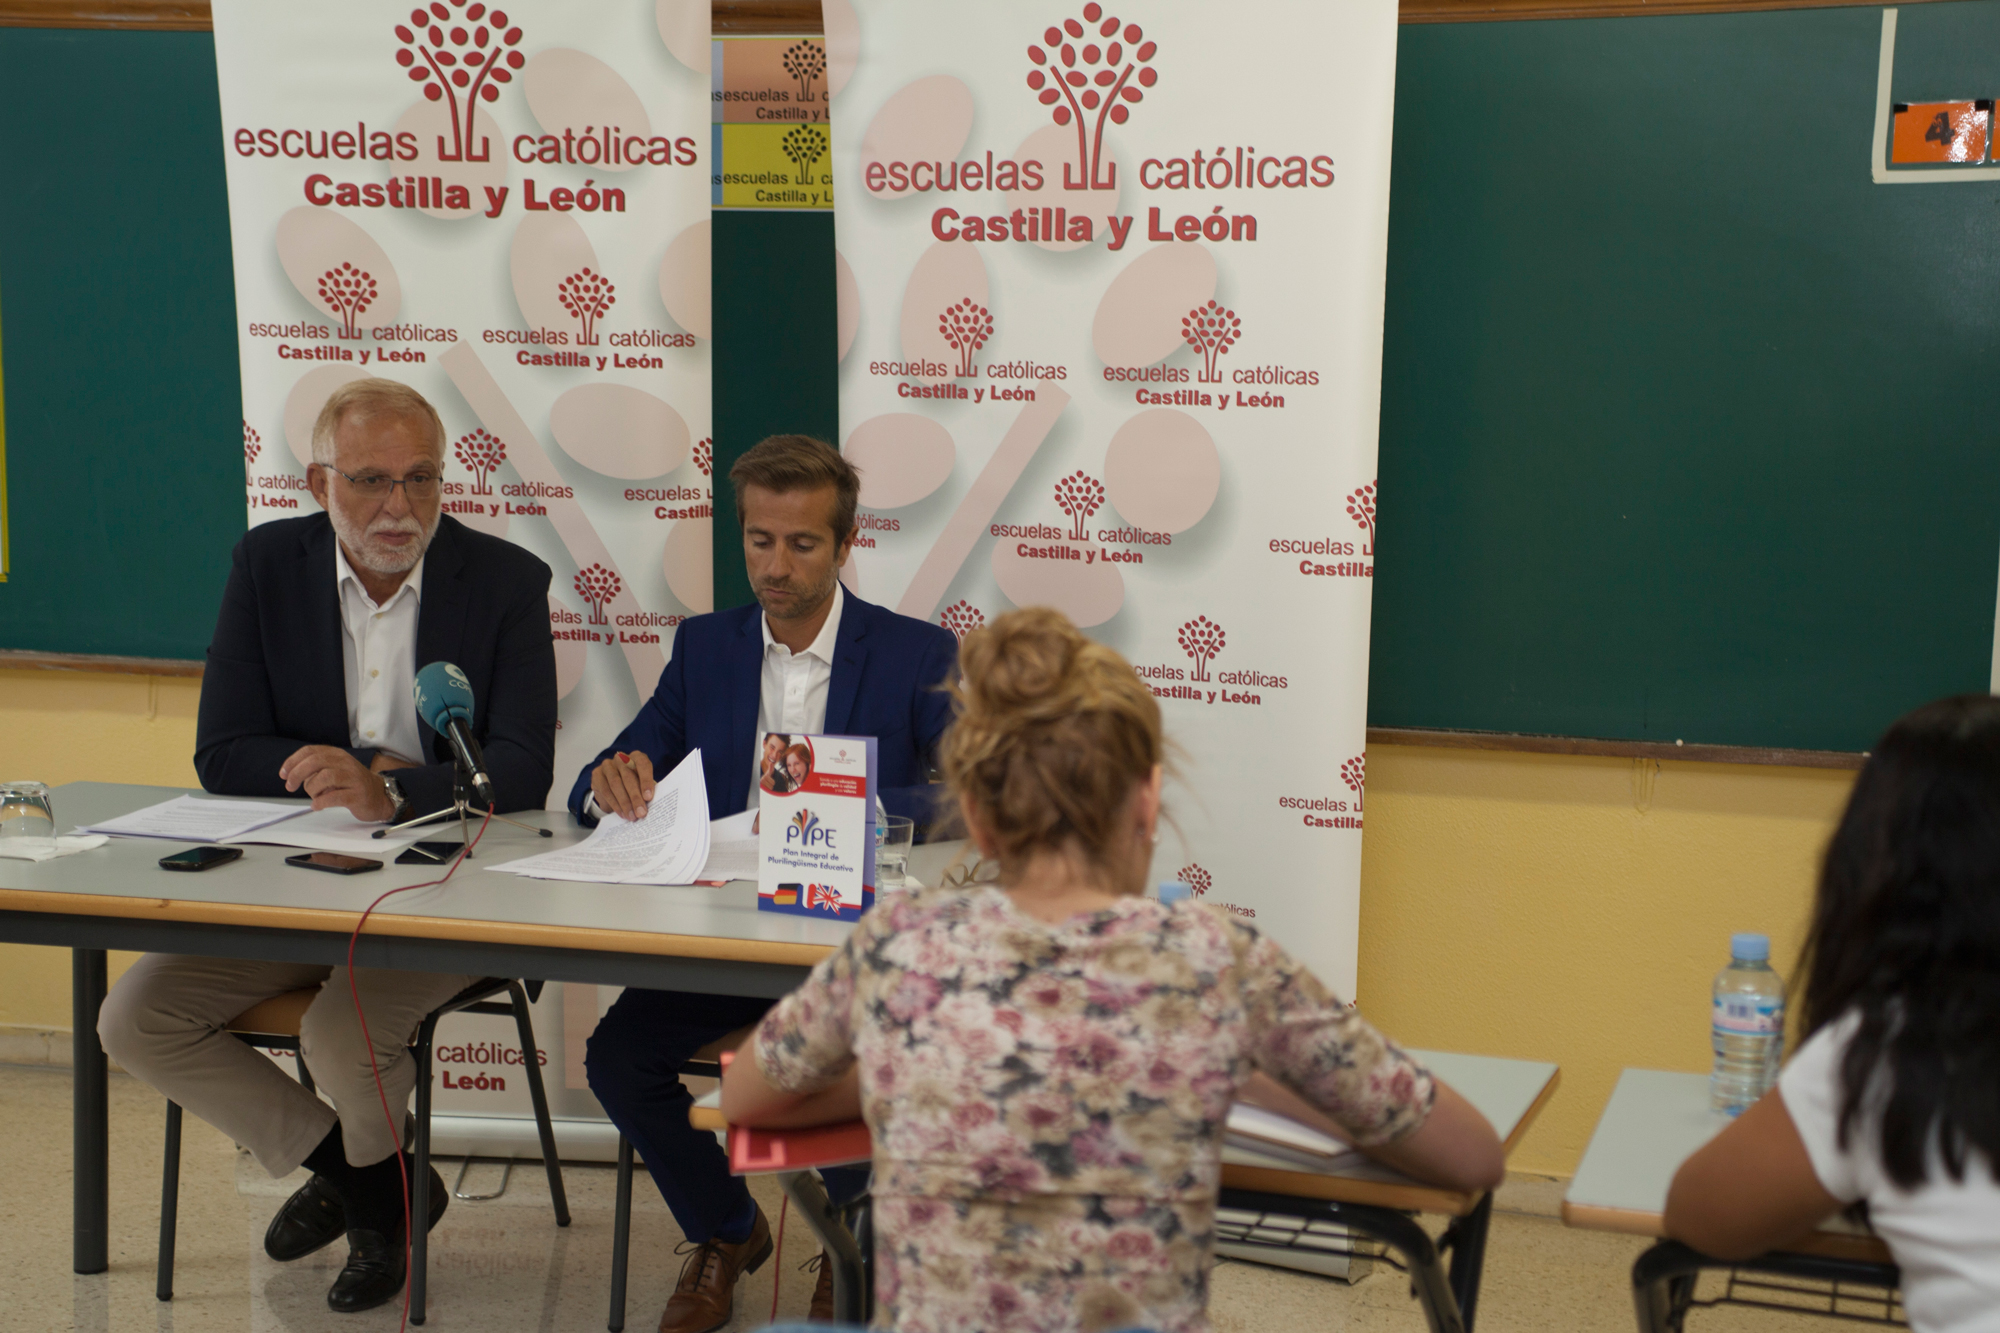 Escuelas Católicas Castilla y León presentación curso 2015-2016